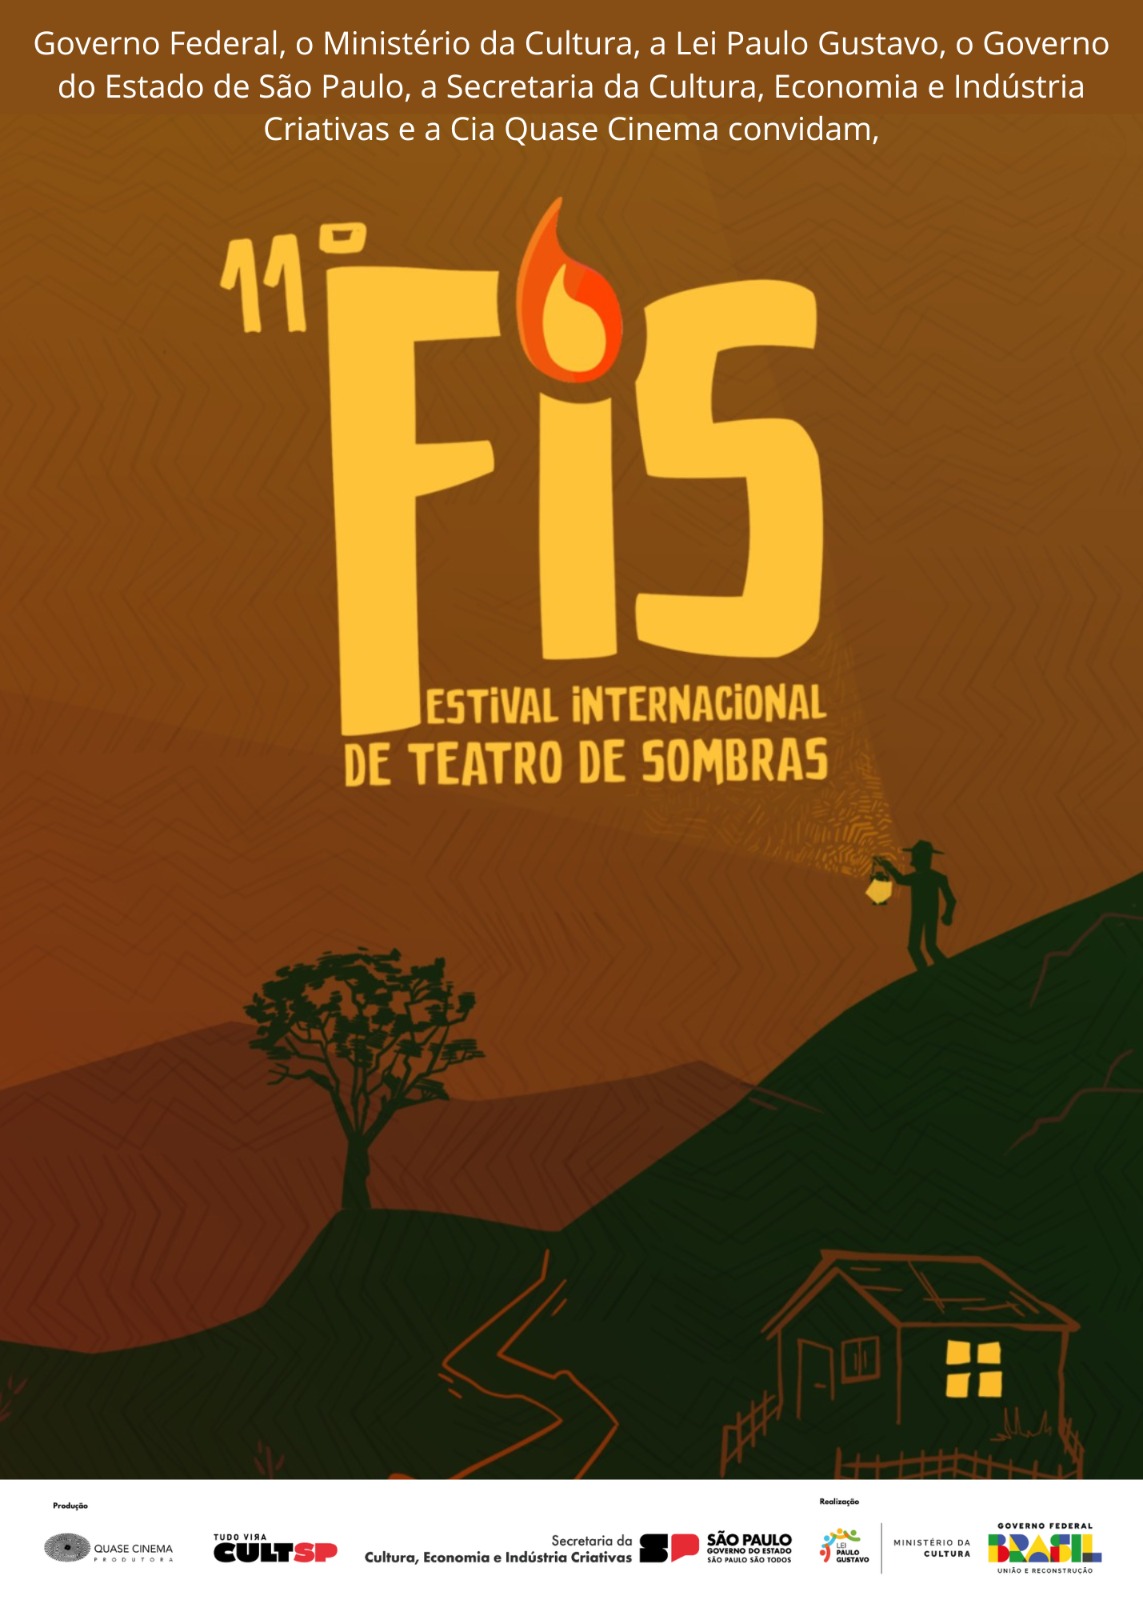 Festival Internacional de Teatro de Sombras inicia nova edição em Taubaté no próximo dia 15